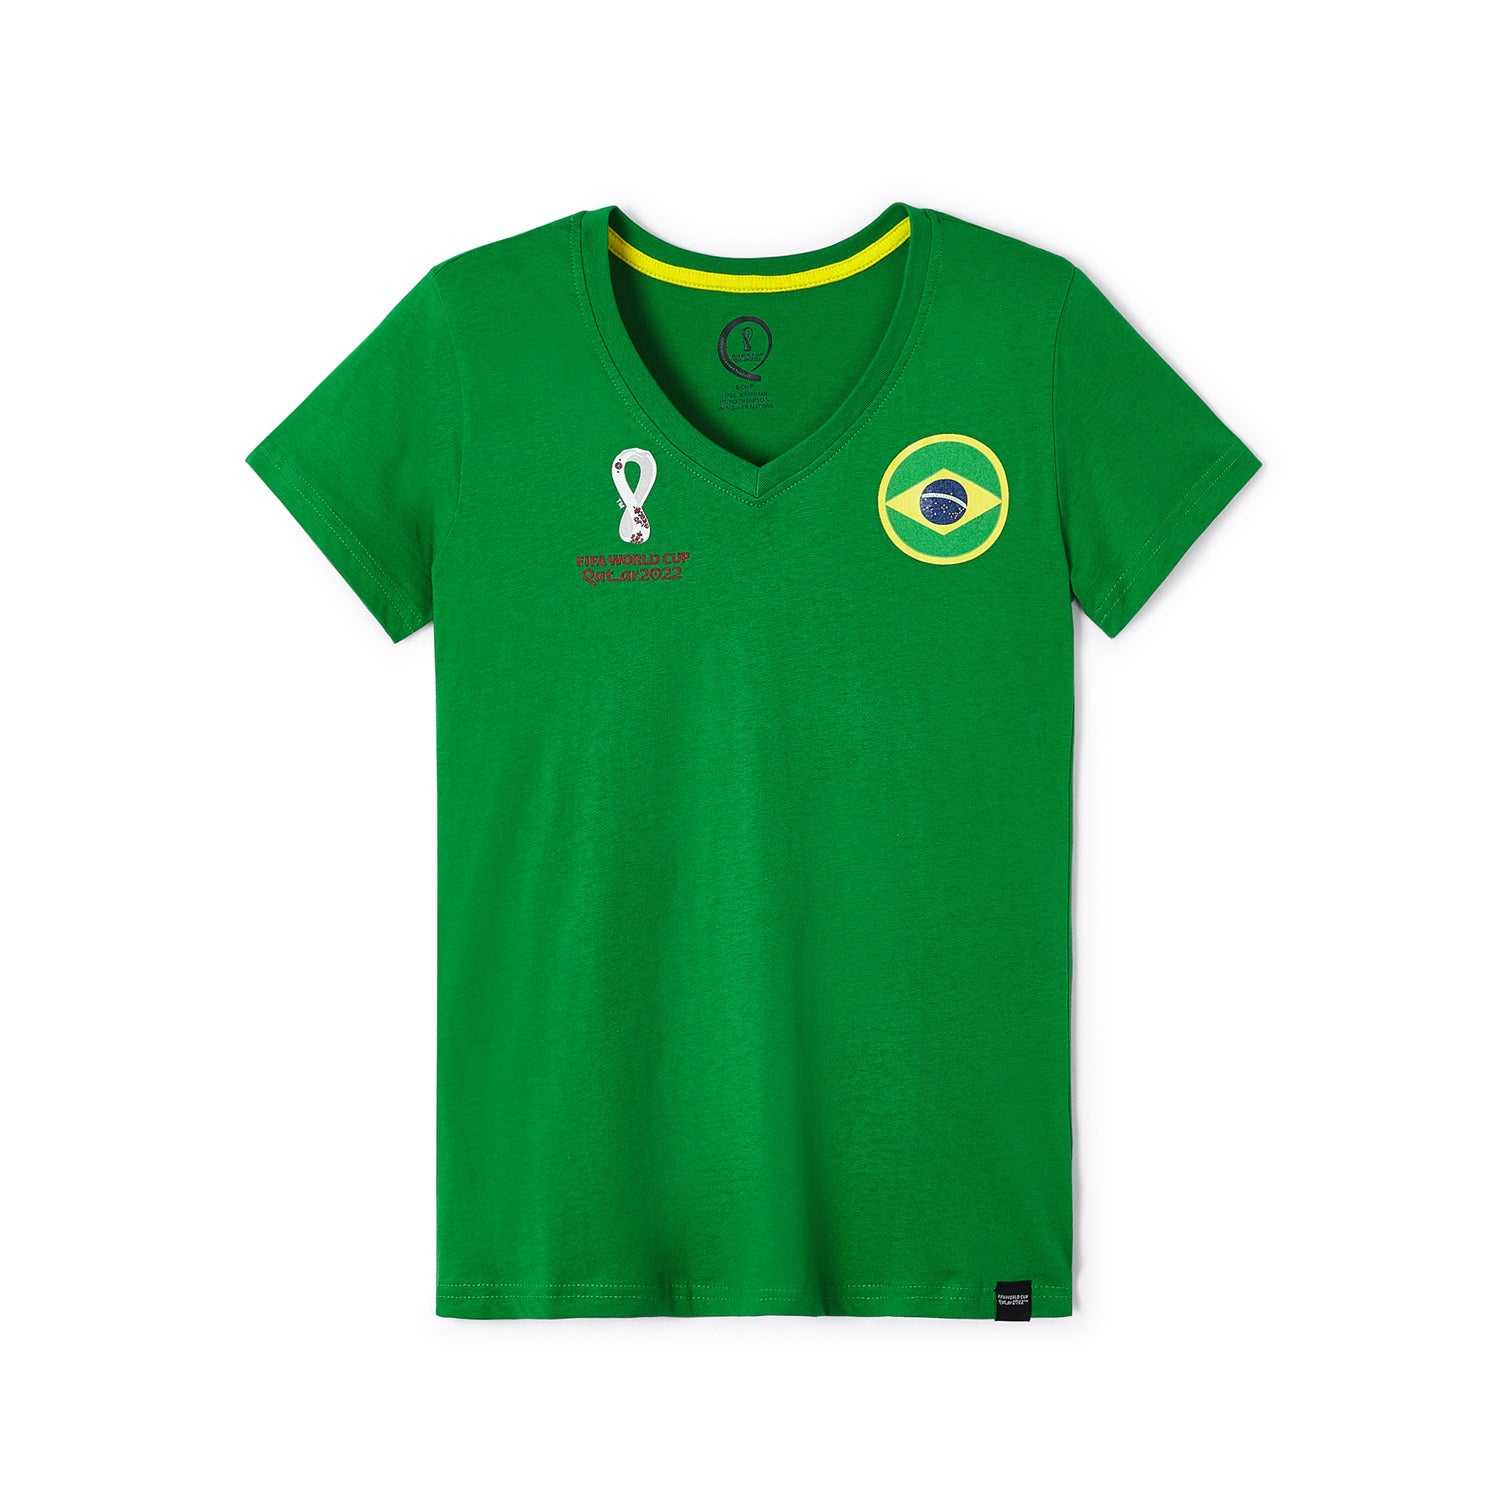 2022 World Cup Brazil Green T-Shirt - Women's